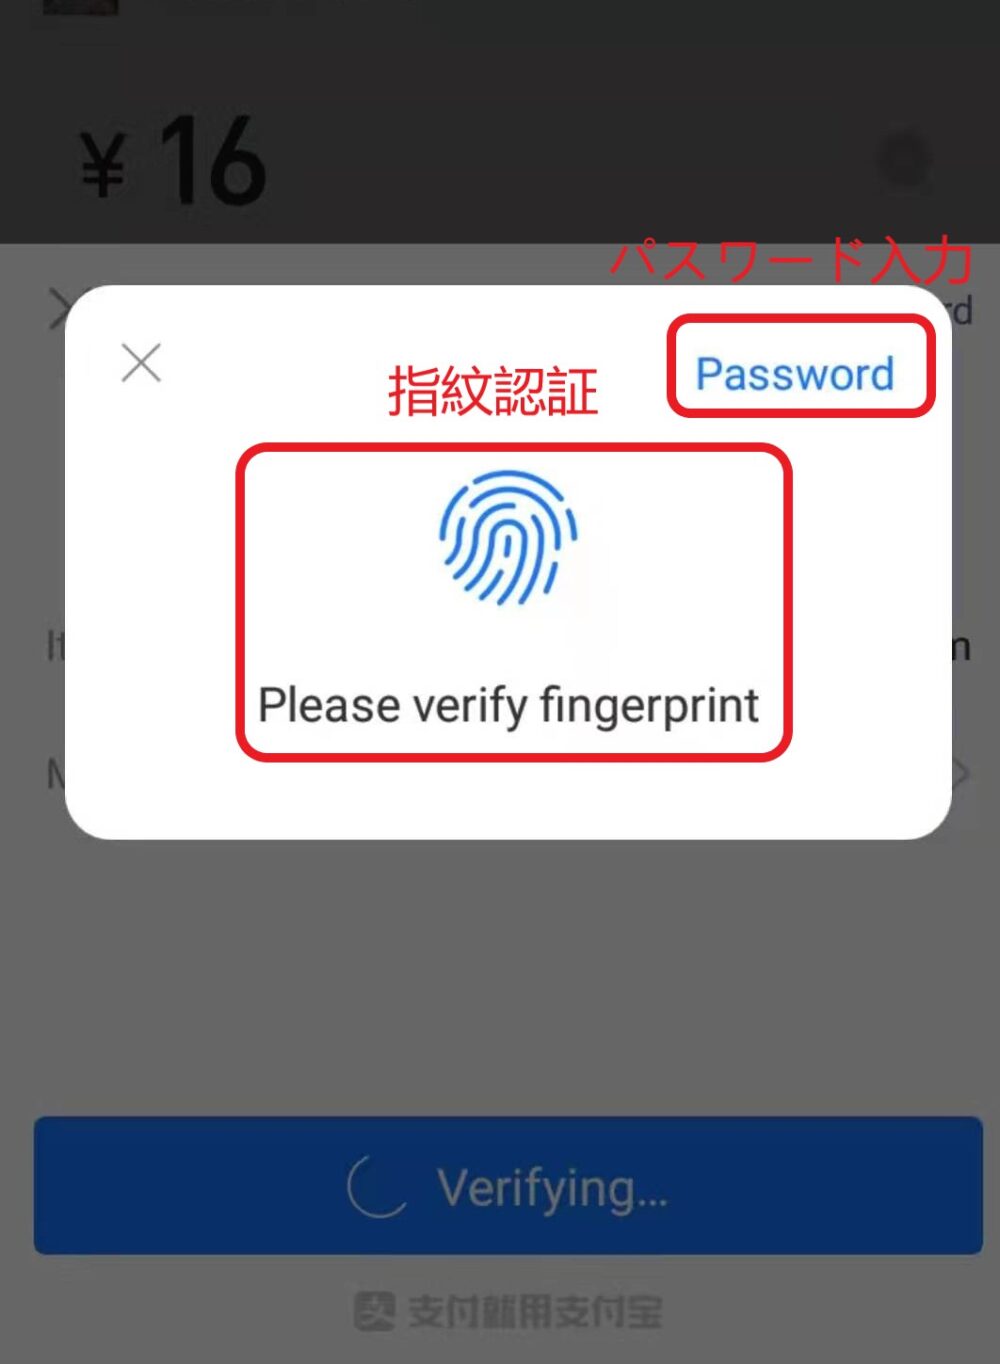 アリペイで指紋認証もしくはパスワードを入力して支払をしている画面の写真